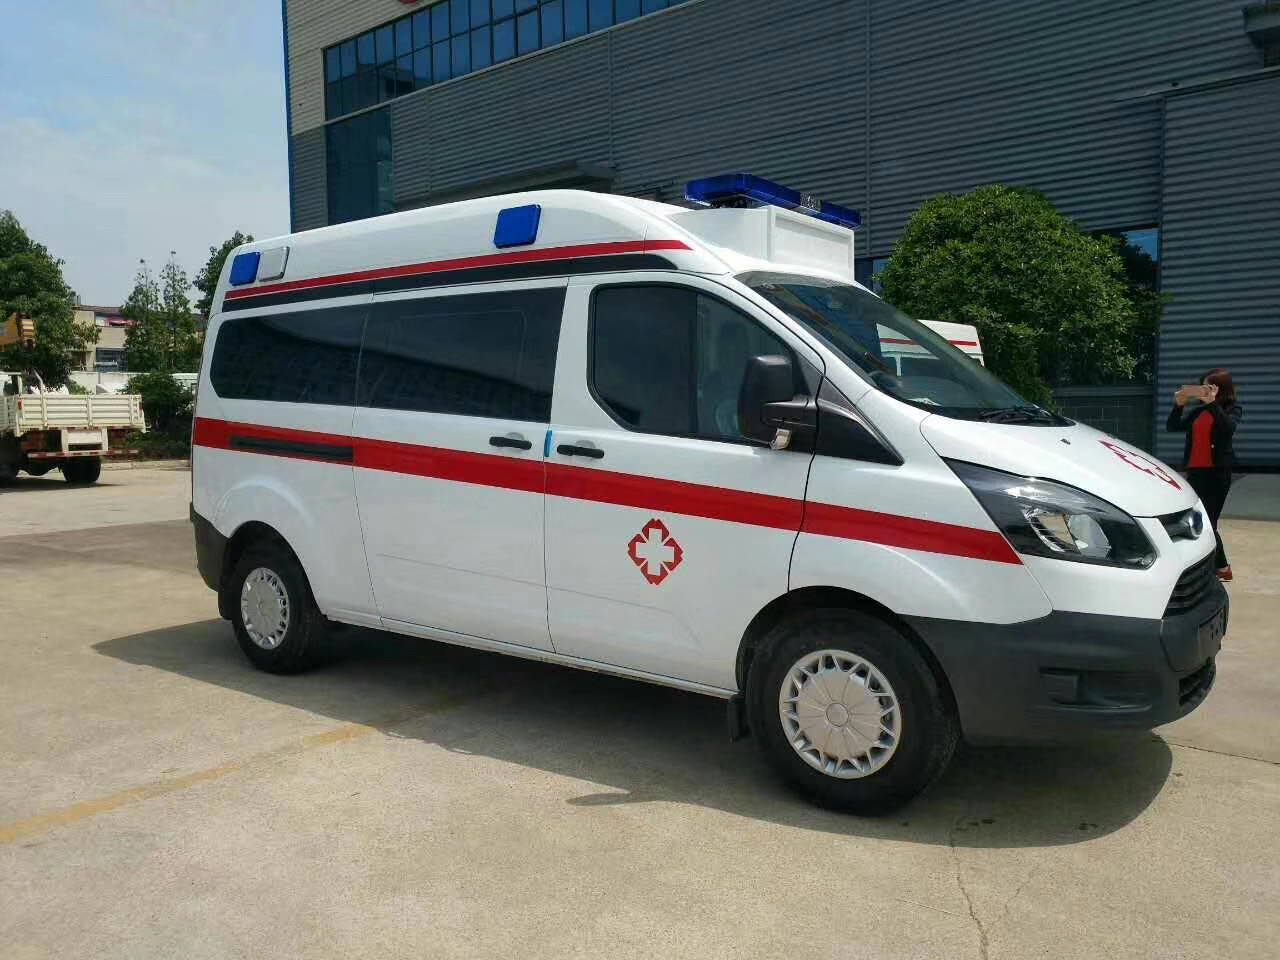 丰顺县出院转院救护车